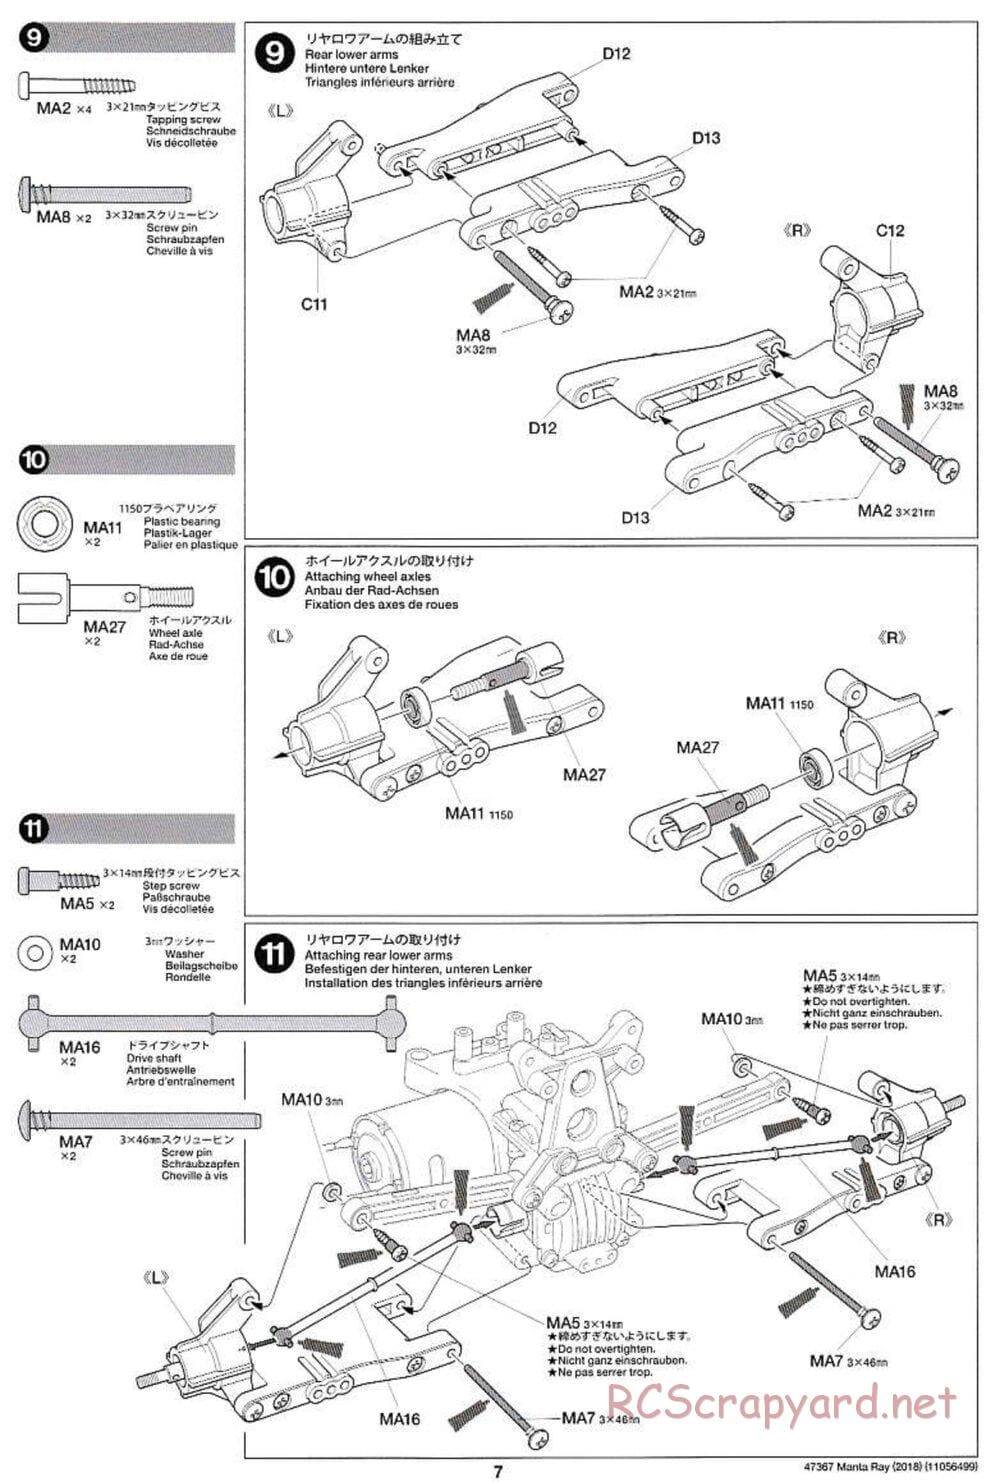 Tamiya - Manta Ray 2018 - DF-01 Chassis - Manual - Page 7